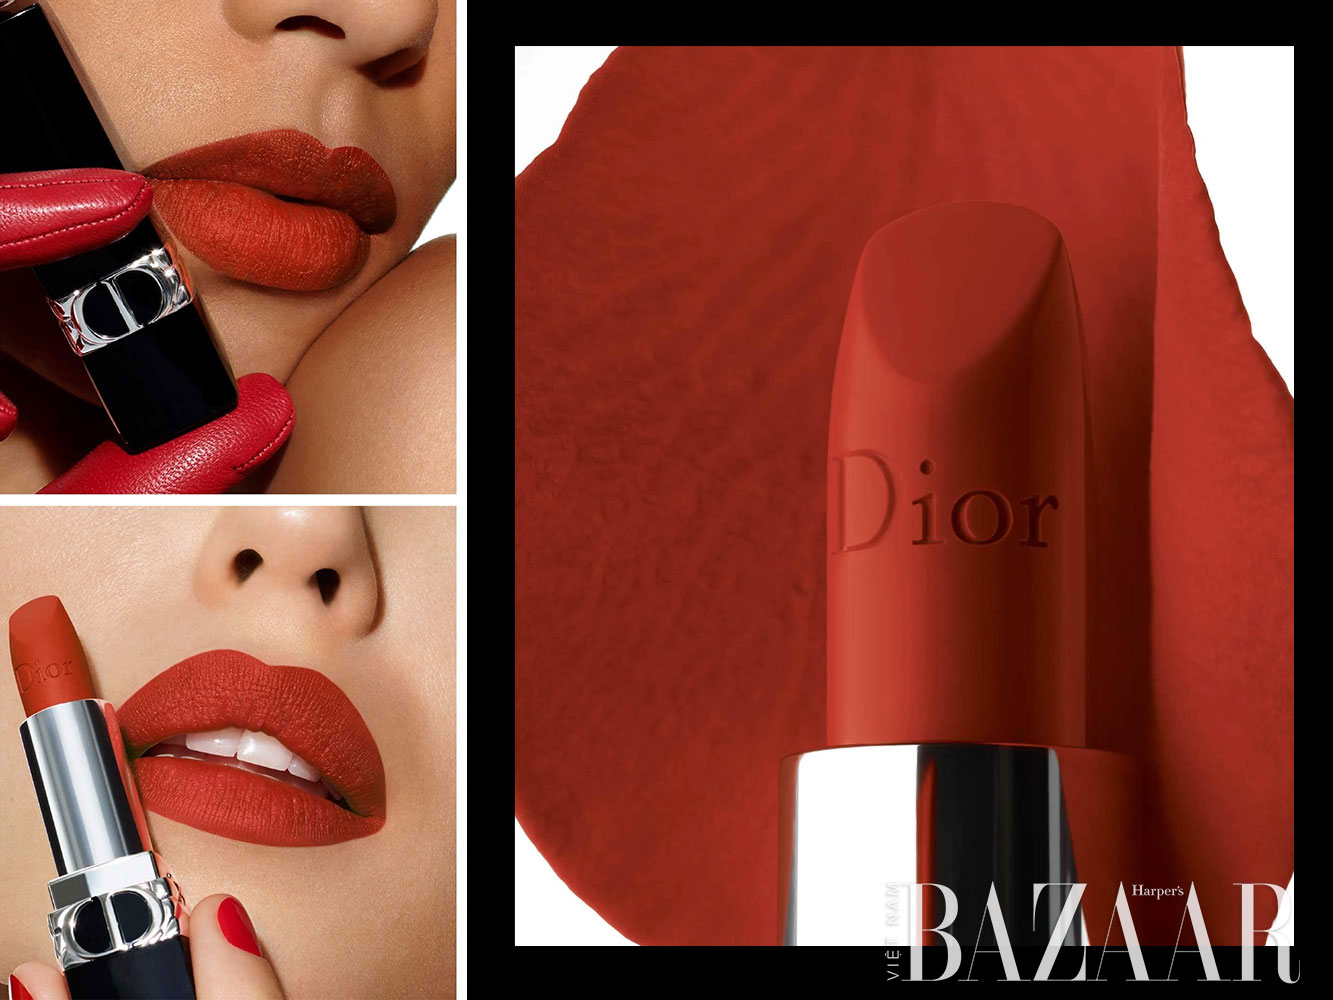 Màu son Dior là một trong những sự lựa chọn hàng đầu của các chị em phụ nữ yêu thích thế giới son môi. Hãy chào đón những hình ảnh về màu son Dior đẹp tuyệt vời để tìm ra những màu phù hợp với phong cách, với sắc da và tạo nên vẻ đẹp thu hút mọi ánh nhìn.